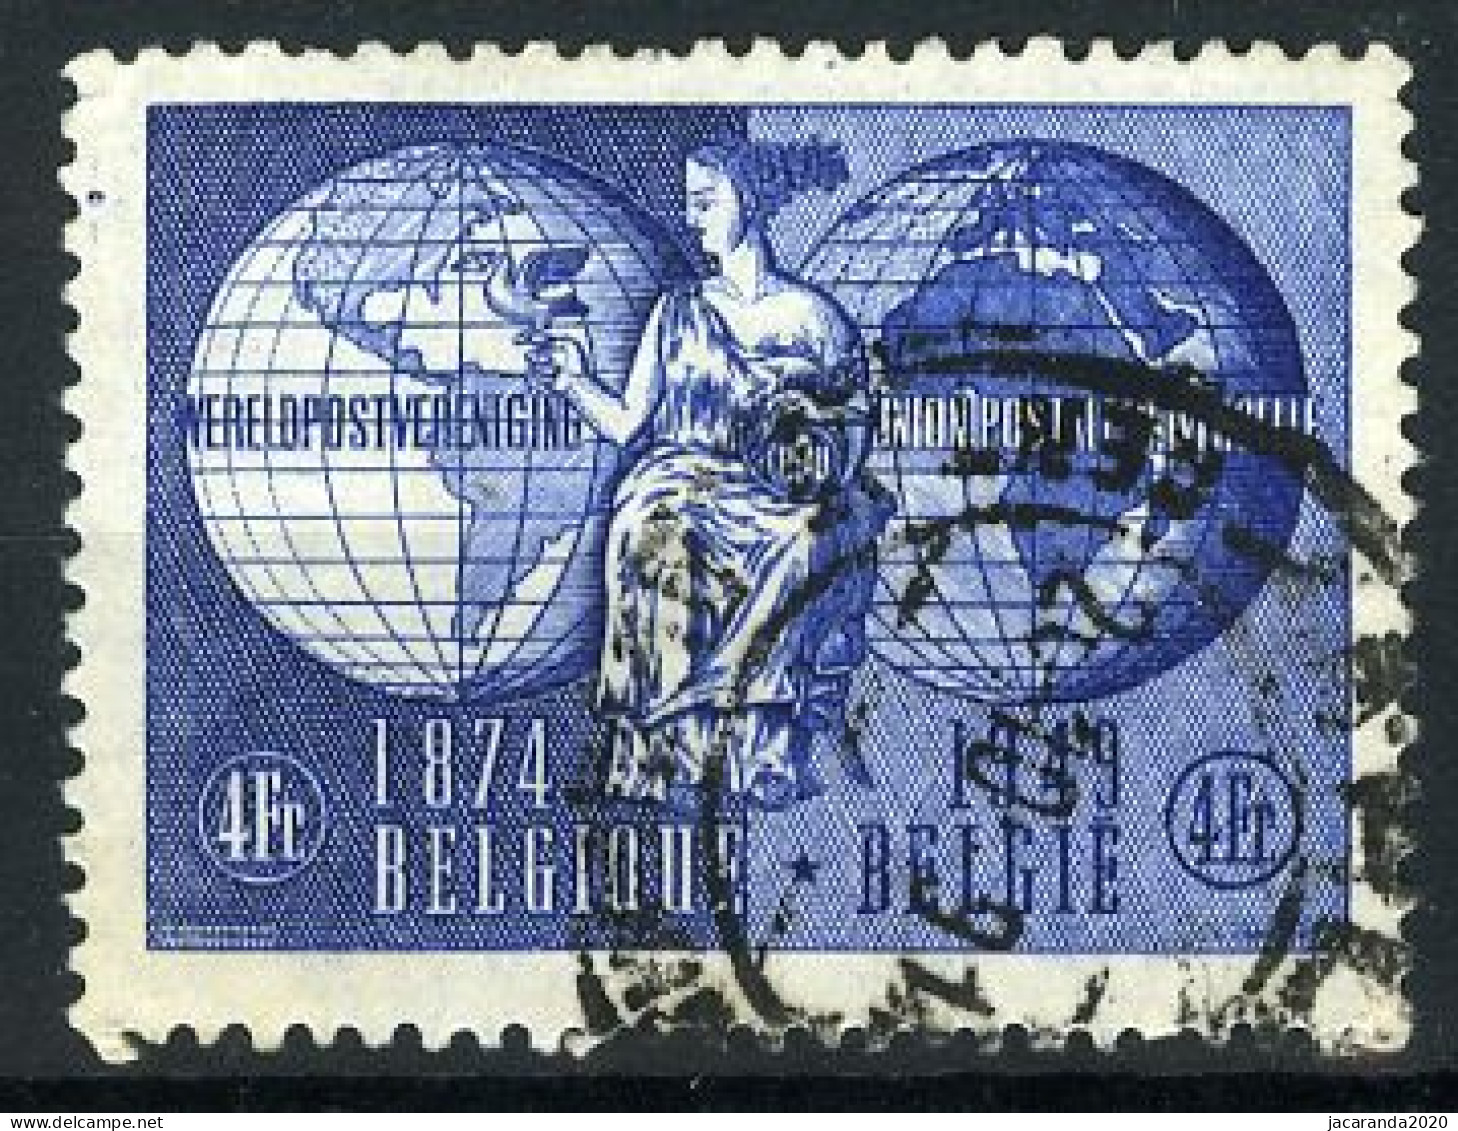 België 812 - 75 Jaar Wereldpostunie - U.P.U. - 75 Ans De L'Union Postale Universelle - Gestempeld - Oblitéré - Used - Oblitérés